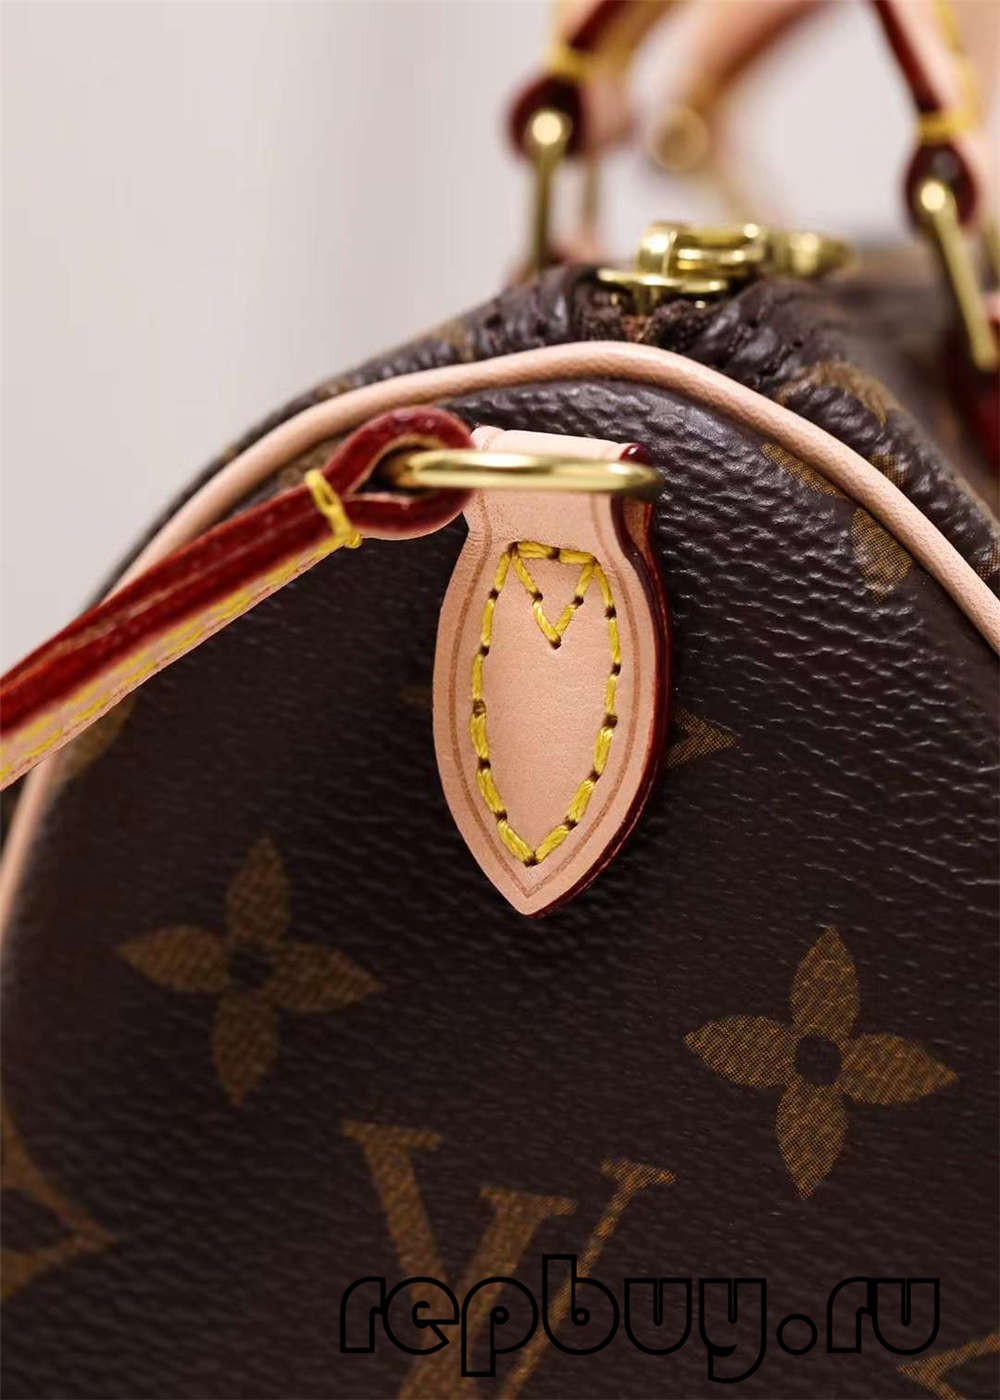 Louis Vuitton M81085 Nano Speedy 16cm hochwertige Replik-Taschen (2022 aktualisiert)-Beste Qualität gefälschte Louis Vuitton-Taschen-Online-Shop, Replik-Designer-Tasche ru